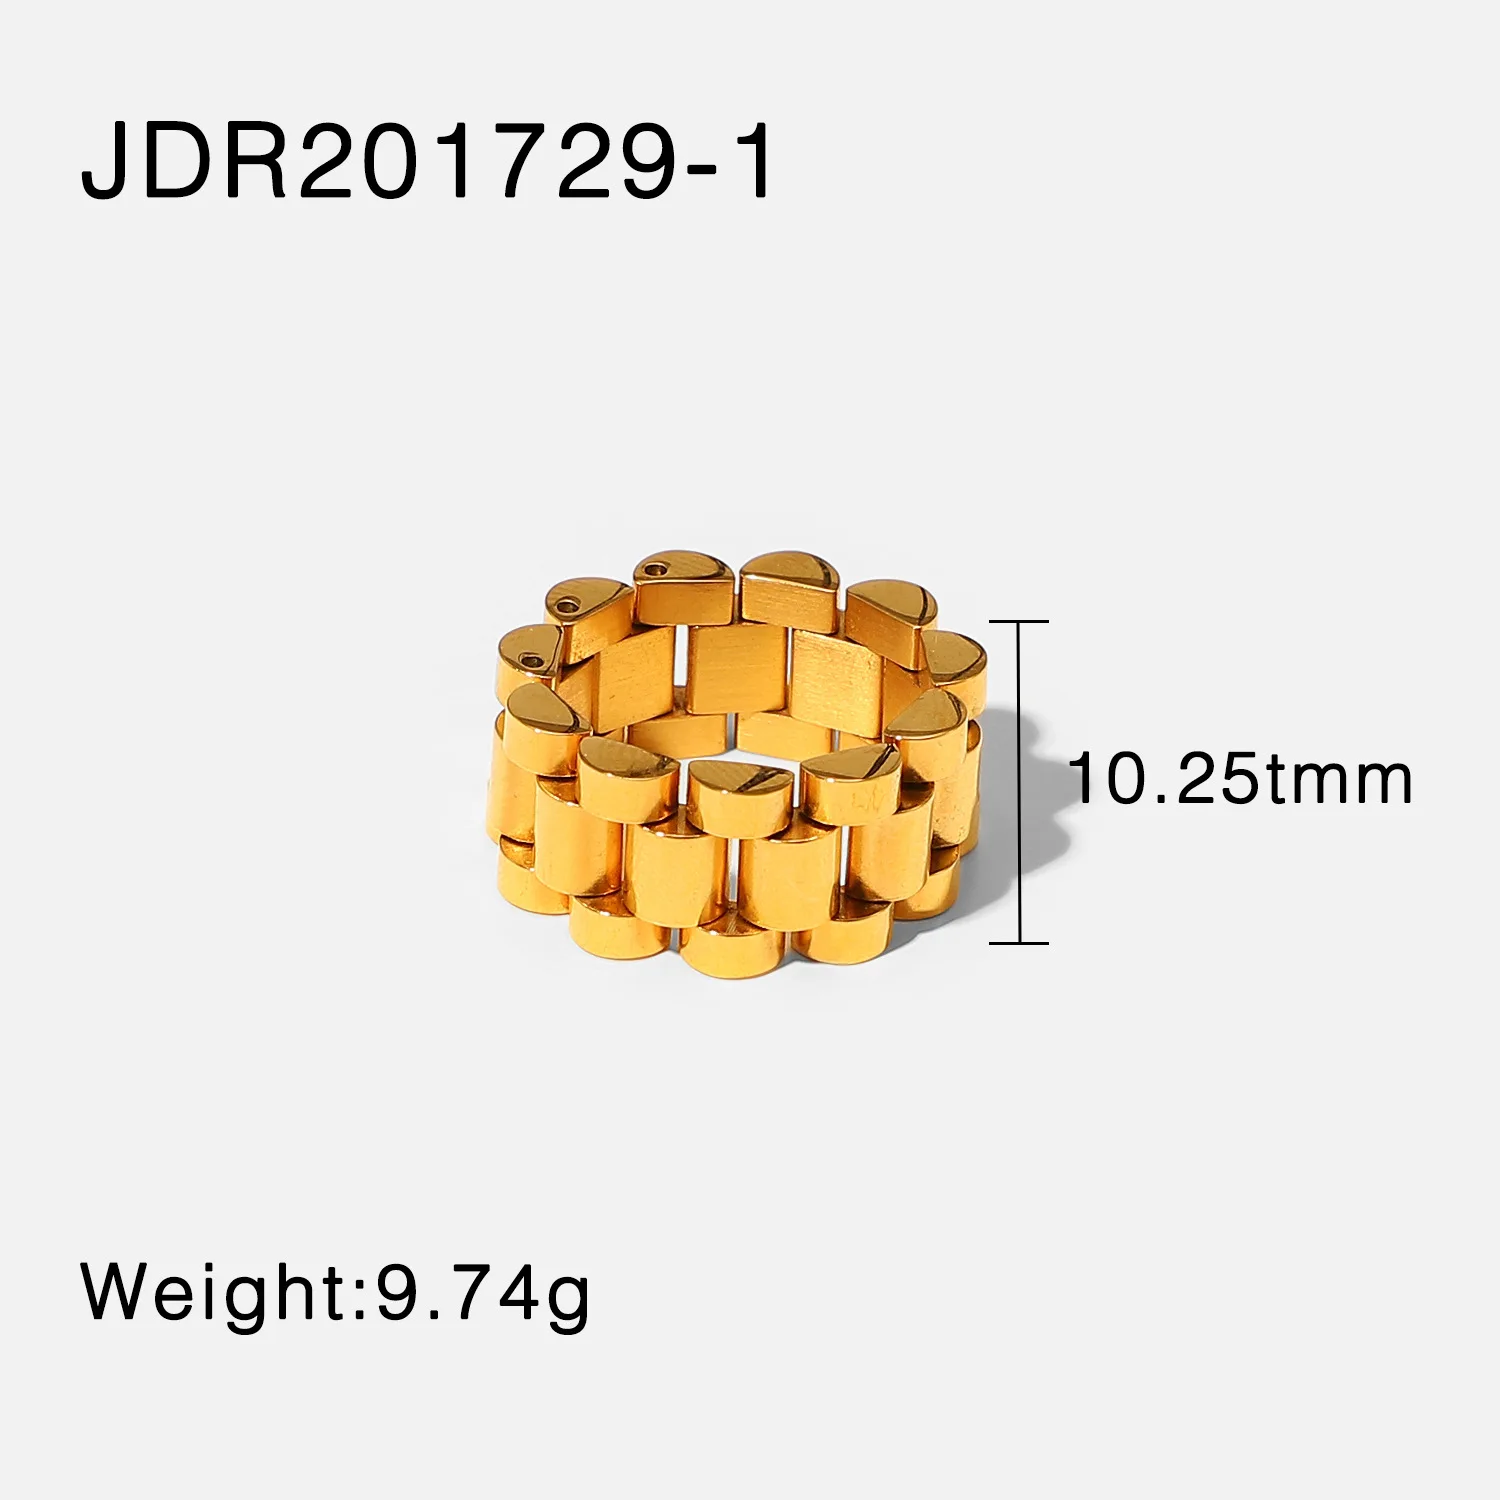 JDR201729-1 size